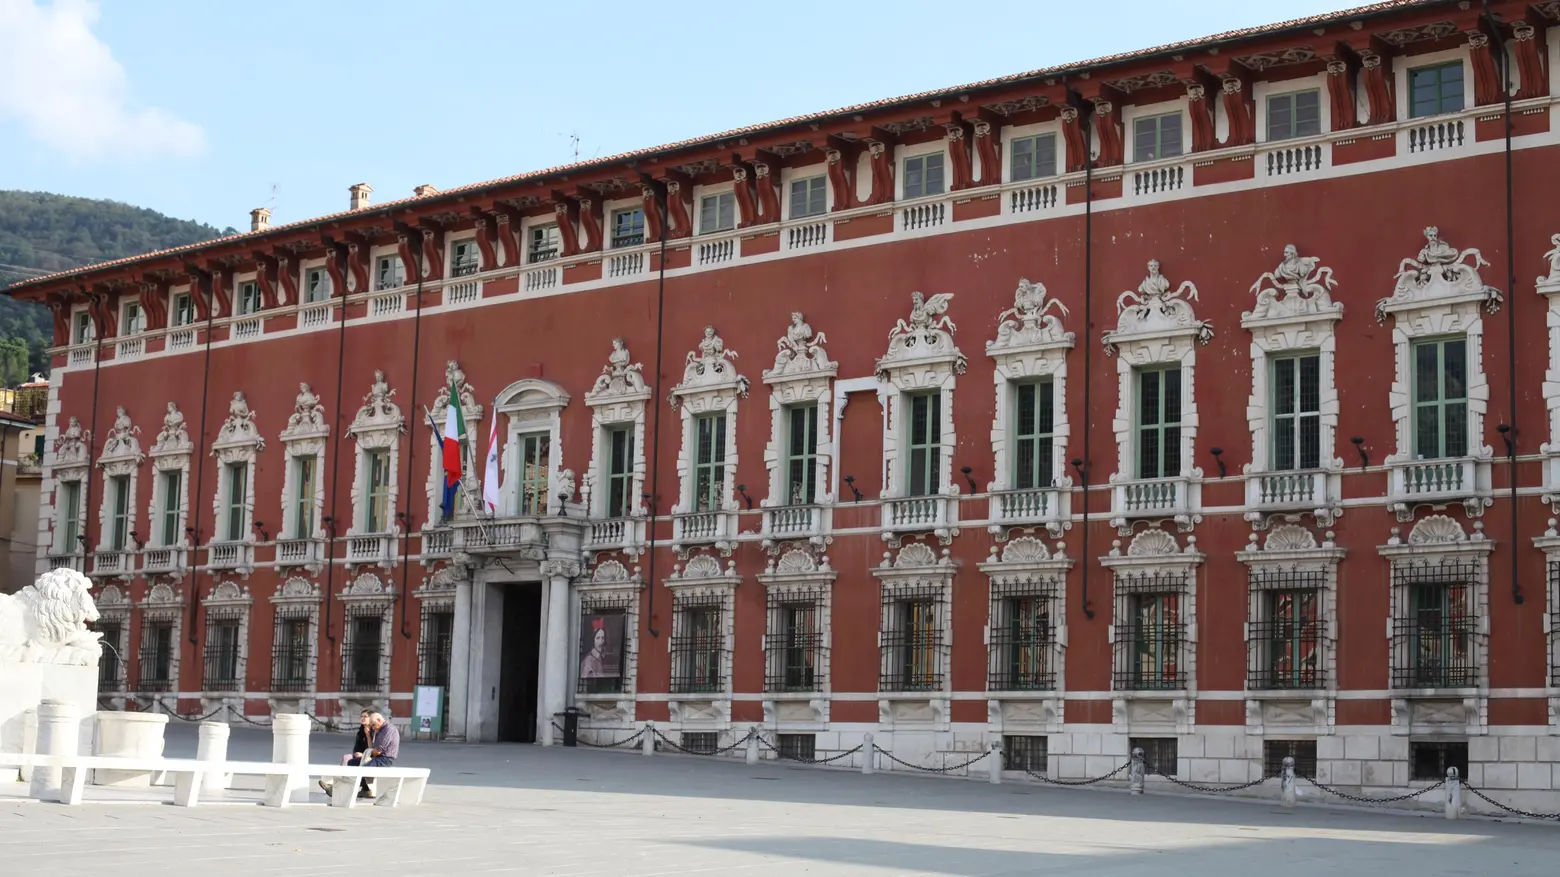 Carenza di spazi pubblici  Palazzo Ducale fa sconti